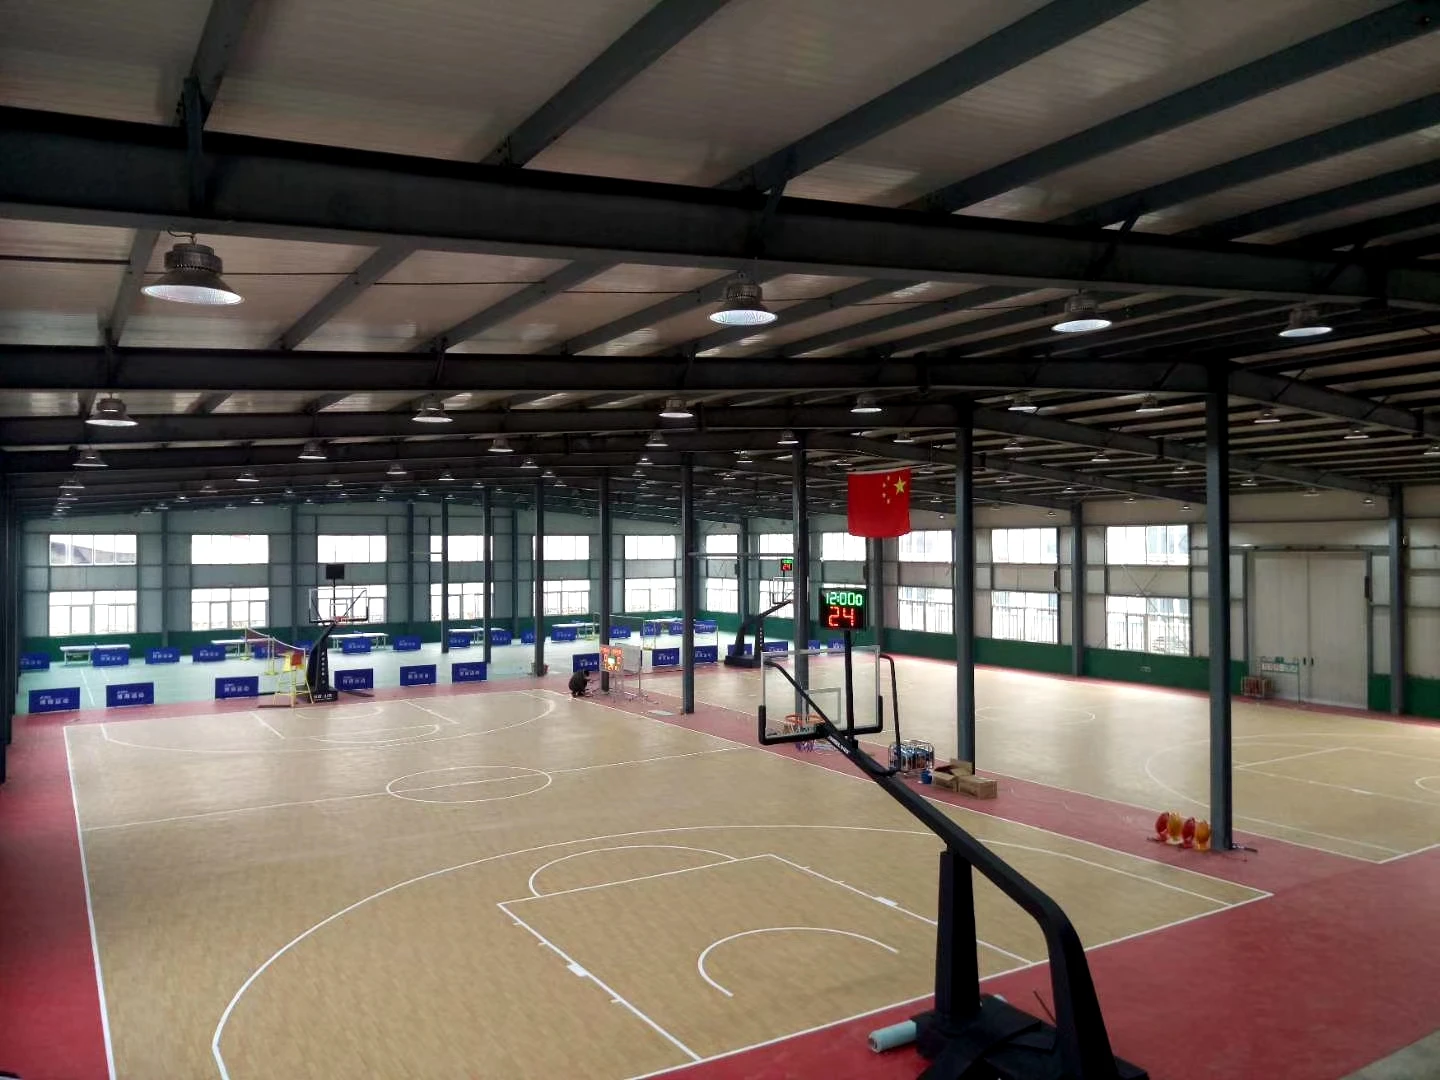 
Indoor vinyl basketball court floor and badminton court mat multi-purpose badminton floor surface 